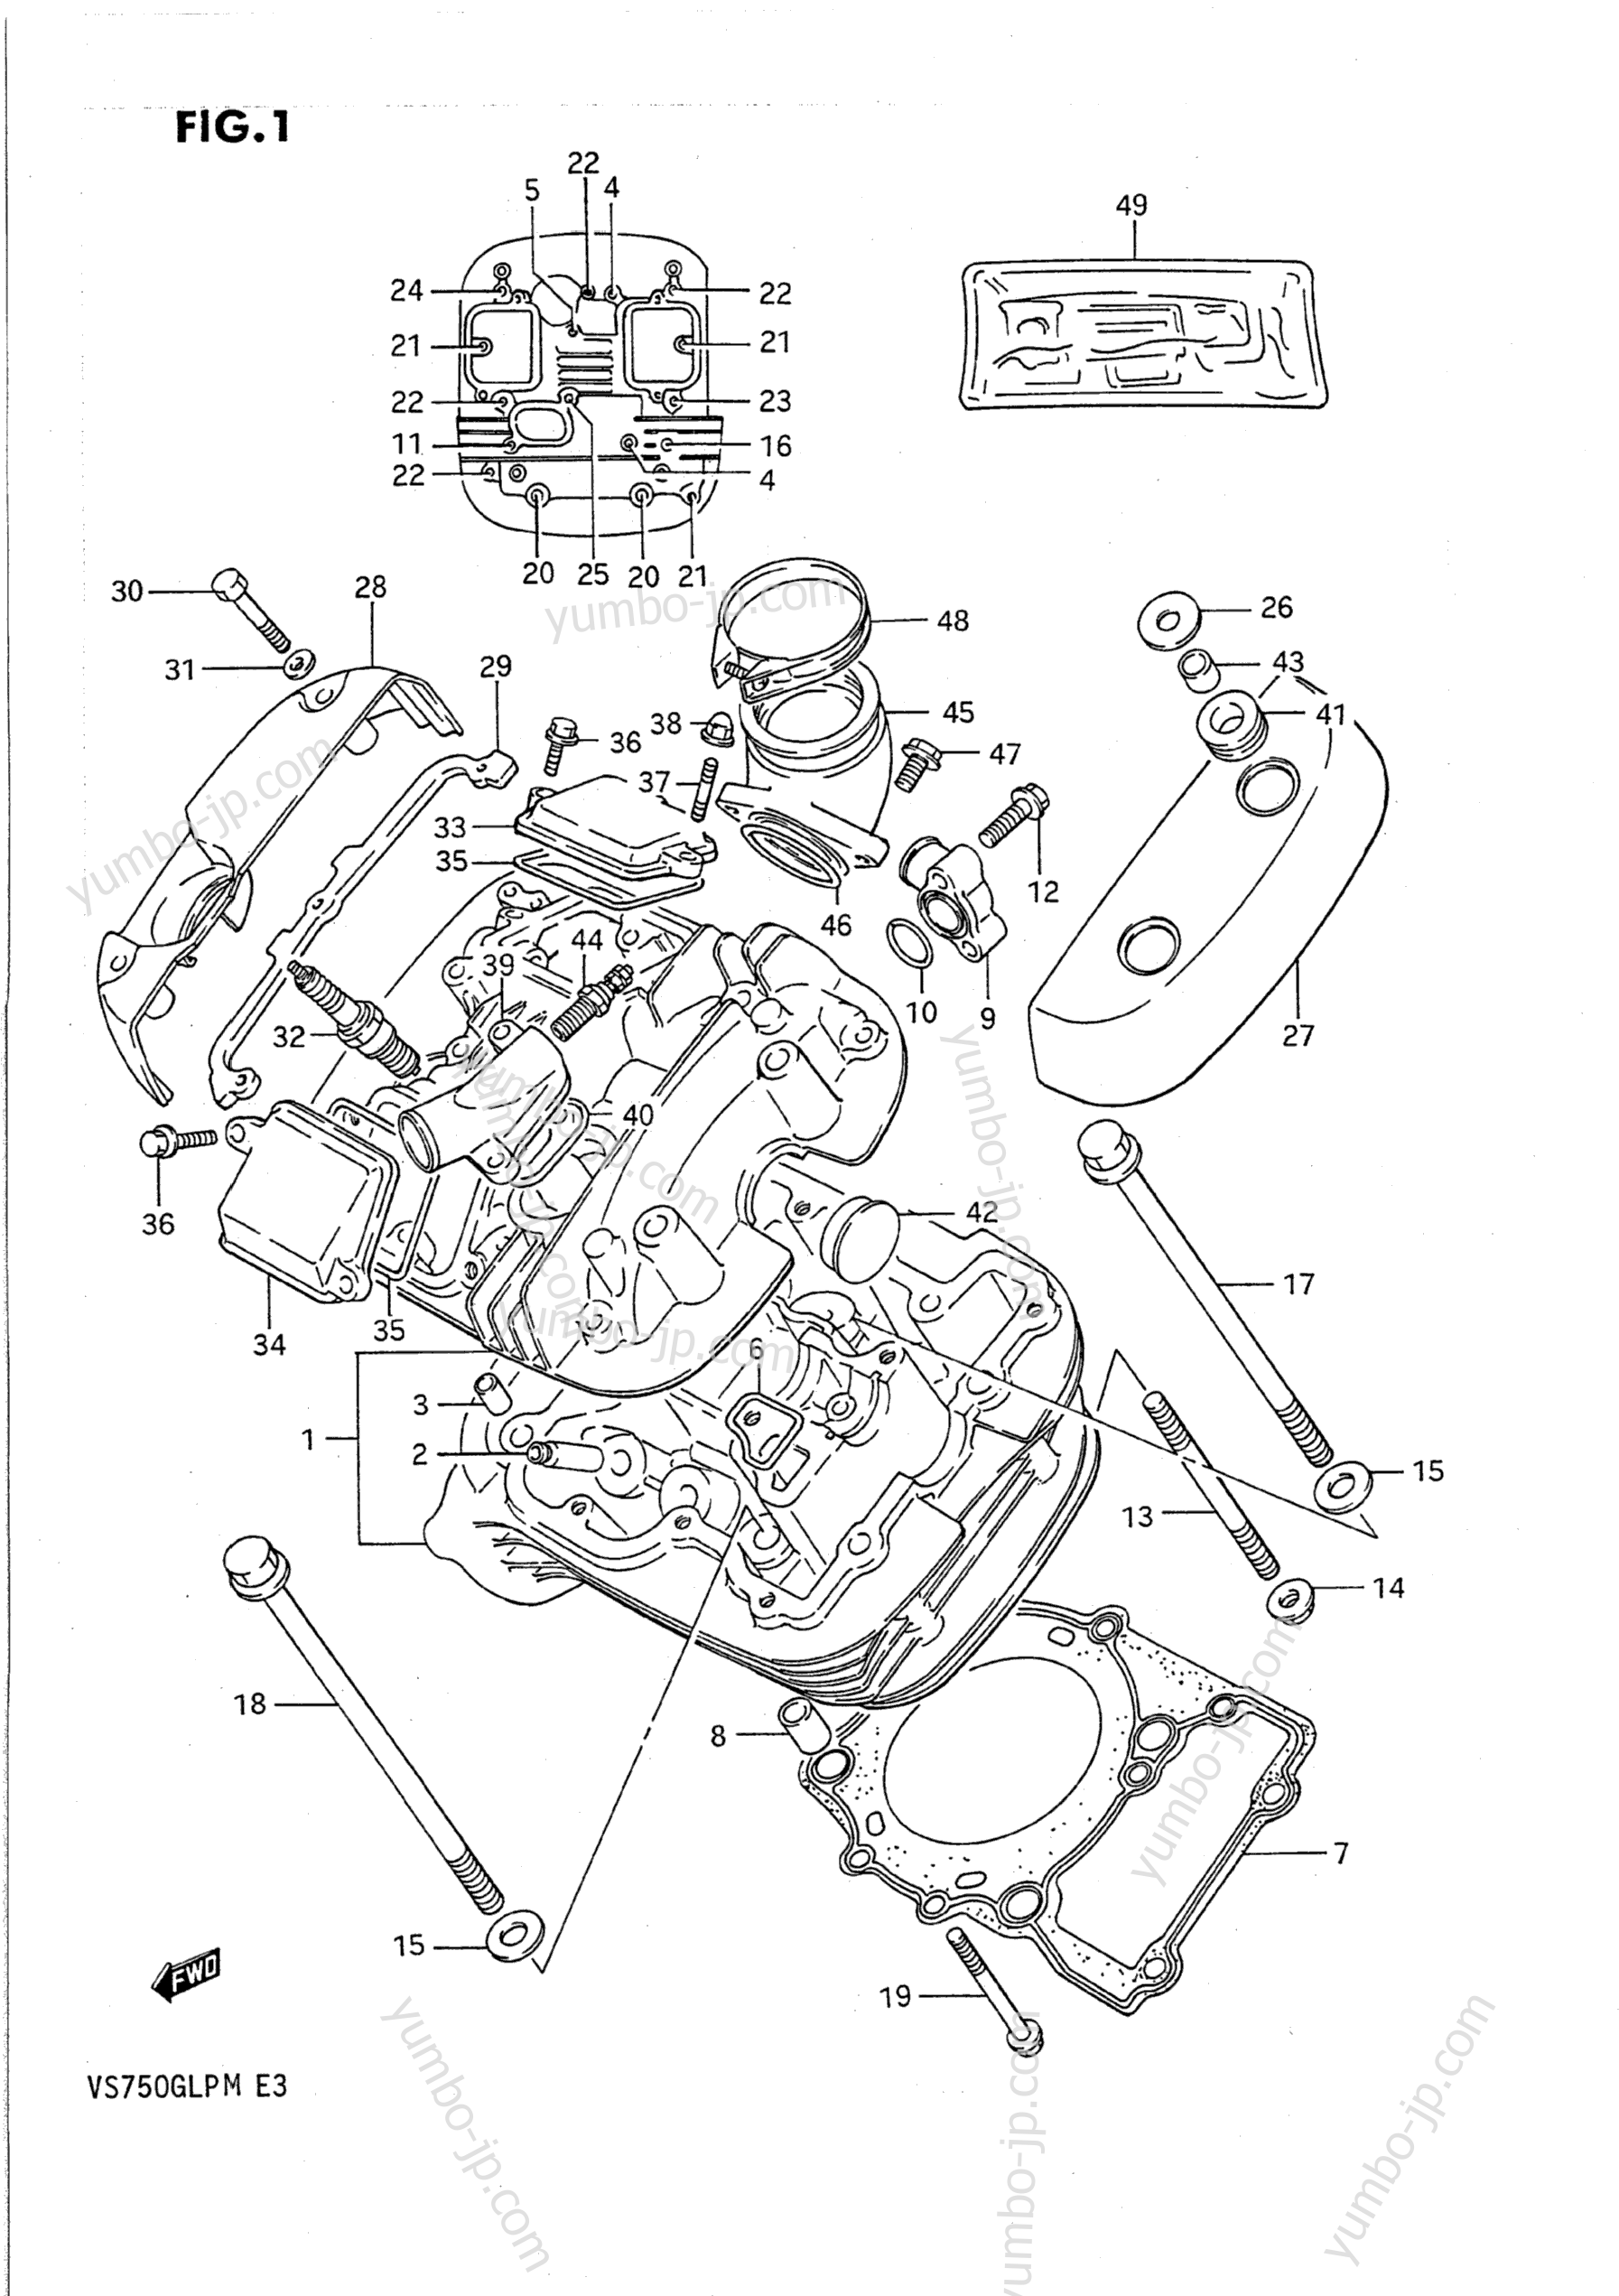 CYLINDER HEAD (FRONT) for motorcycles SUZUKI Intruder (VS750GLP) 1989 year